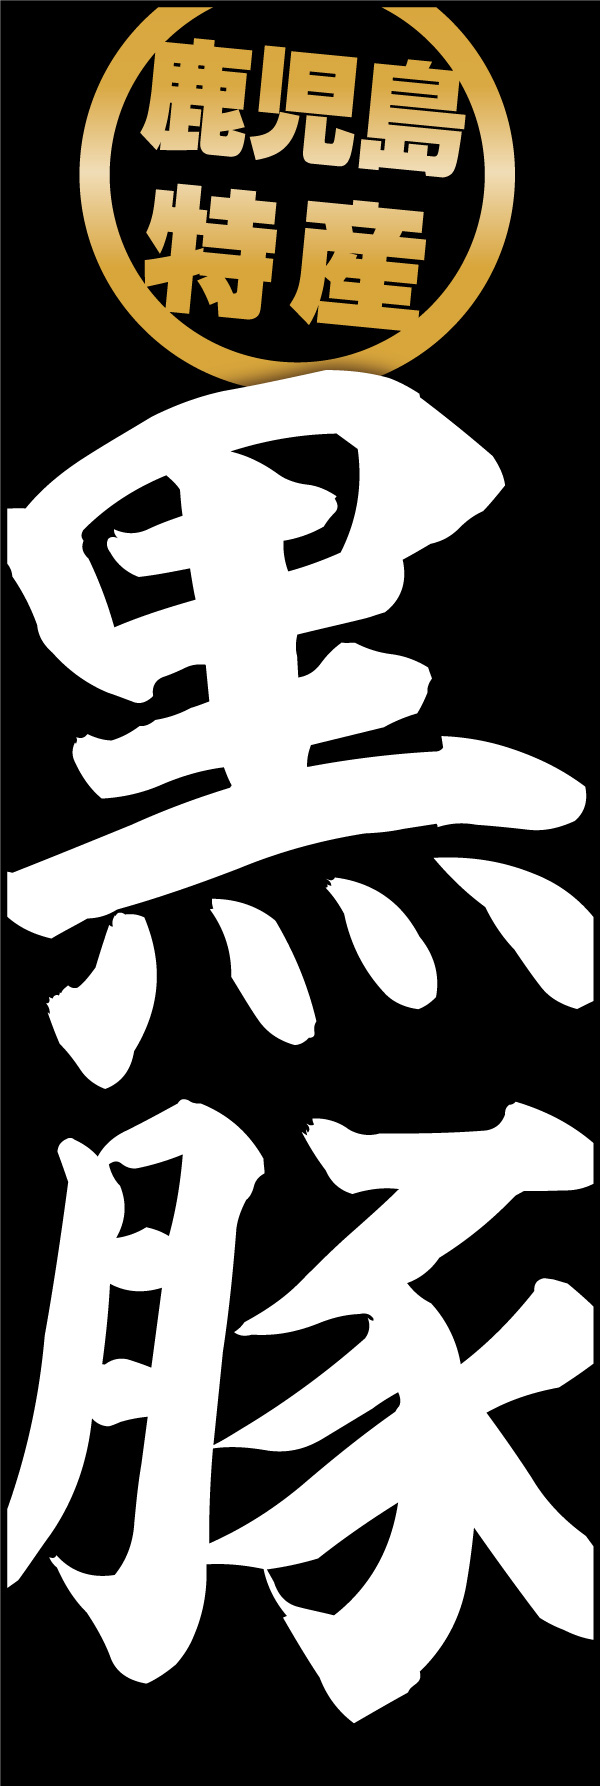 黒豚 01 「黒豚」の幟です。シンプルで派手に「黒豚」の文字を強調したデザインにし、産地である鹿児島表記を特産スタンプをイメージして入れました。(Y.M)